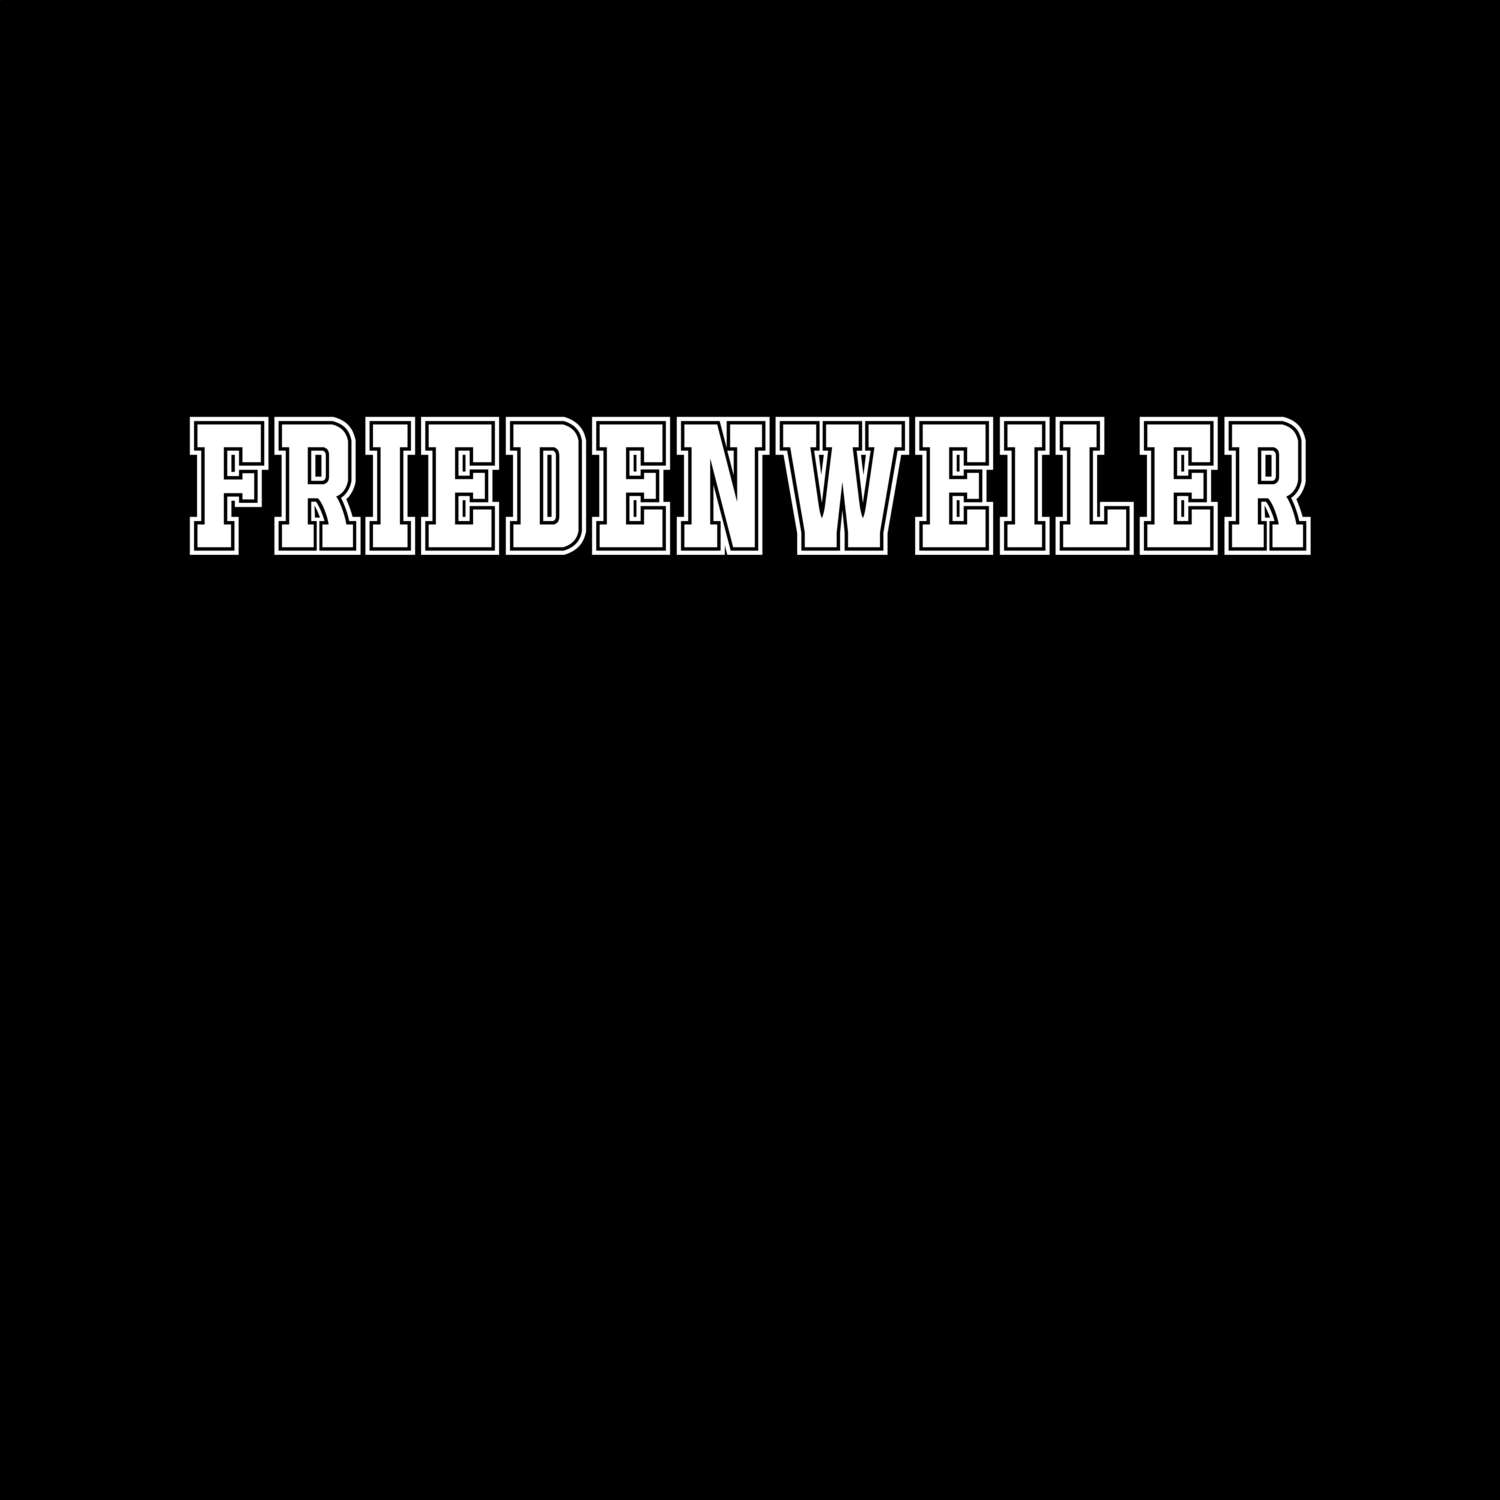 Friedenweiler T-Shirt »Classic«